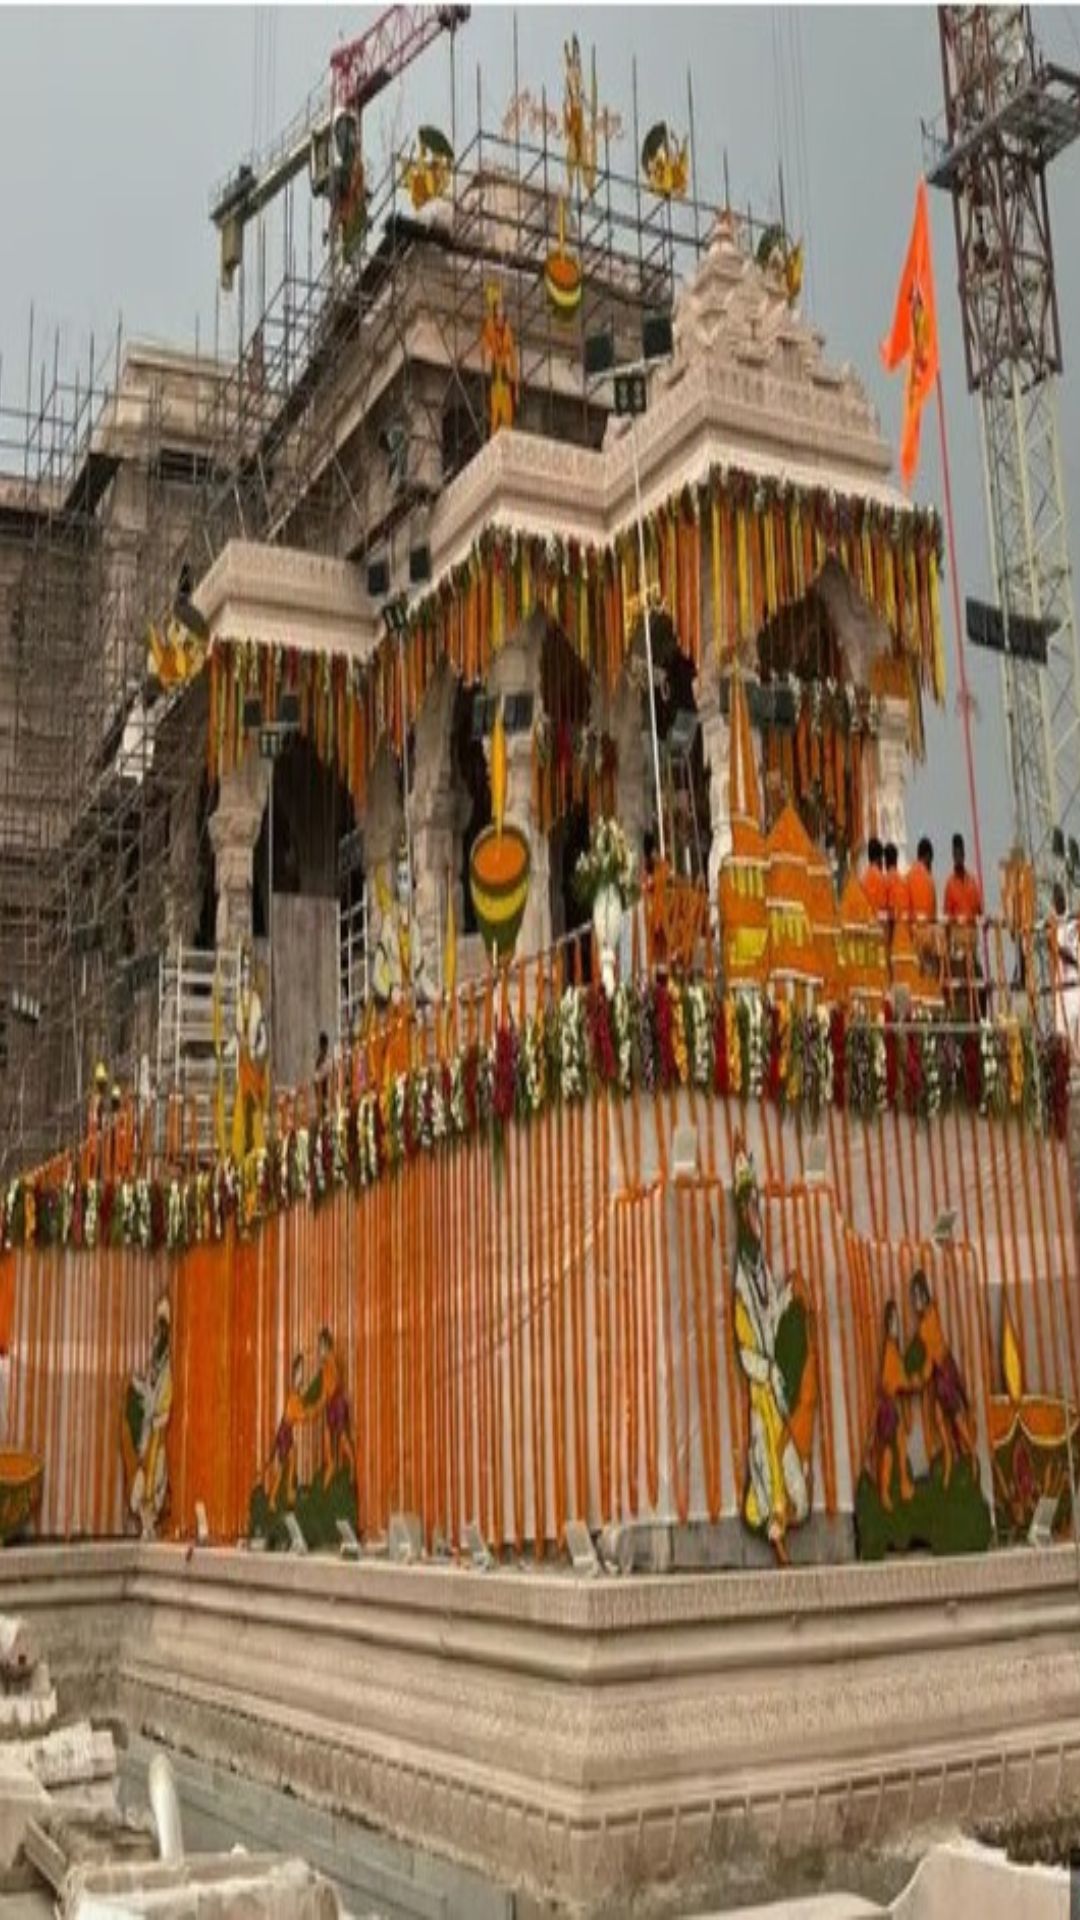 राम मंदिर में कुल कितने दरवाजे लगे हैं?